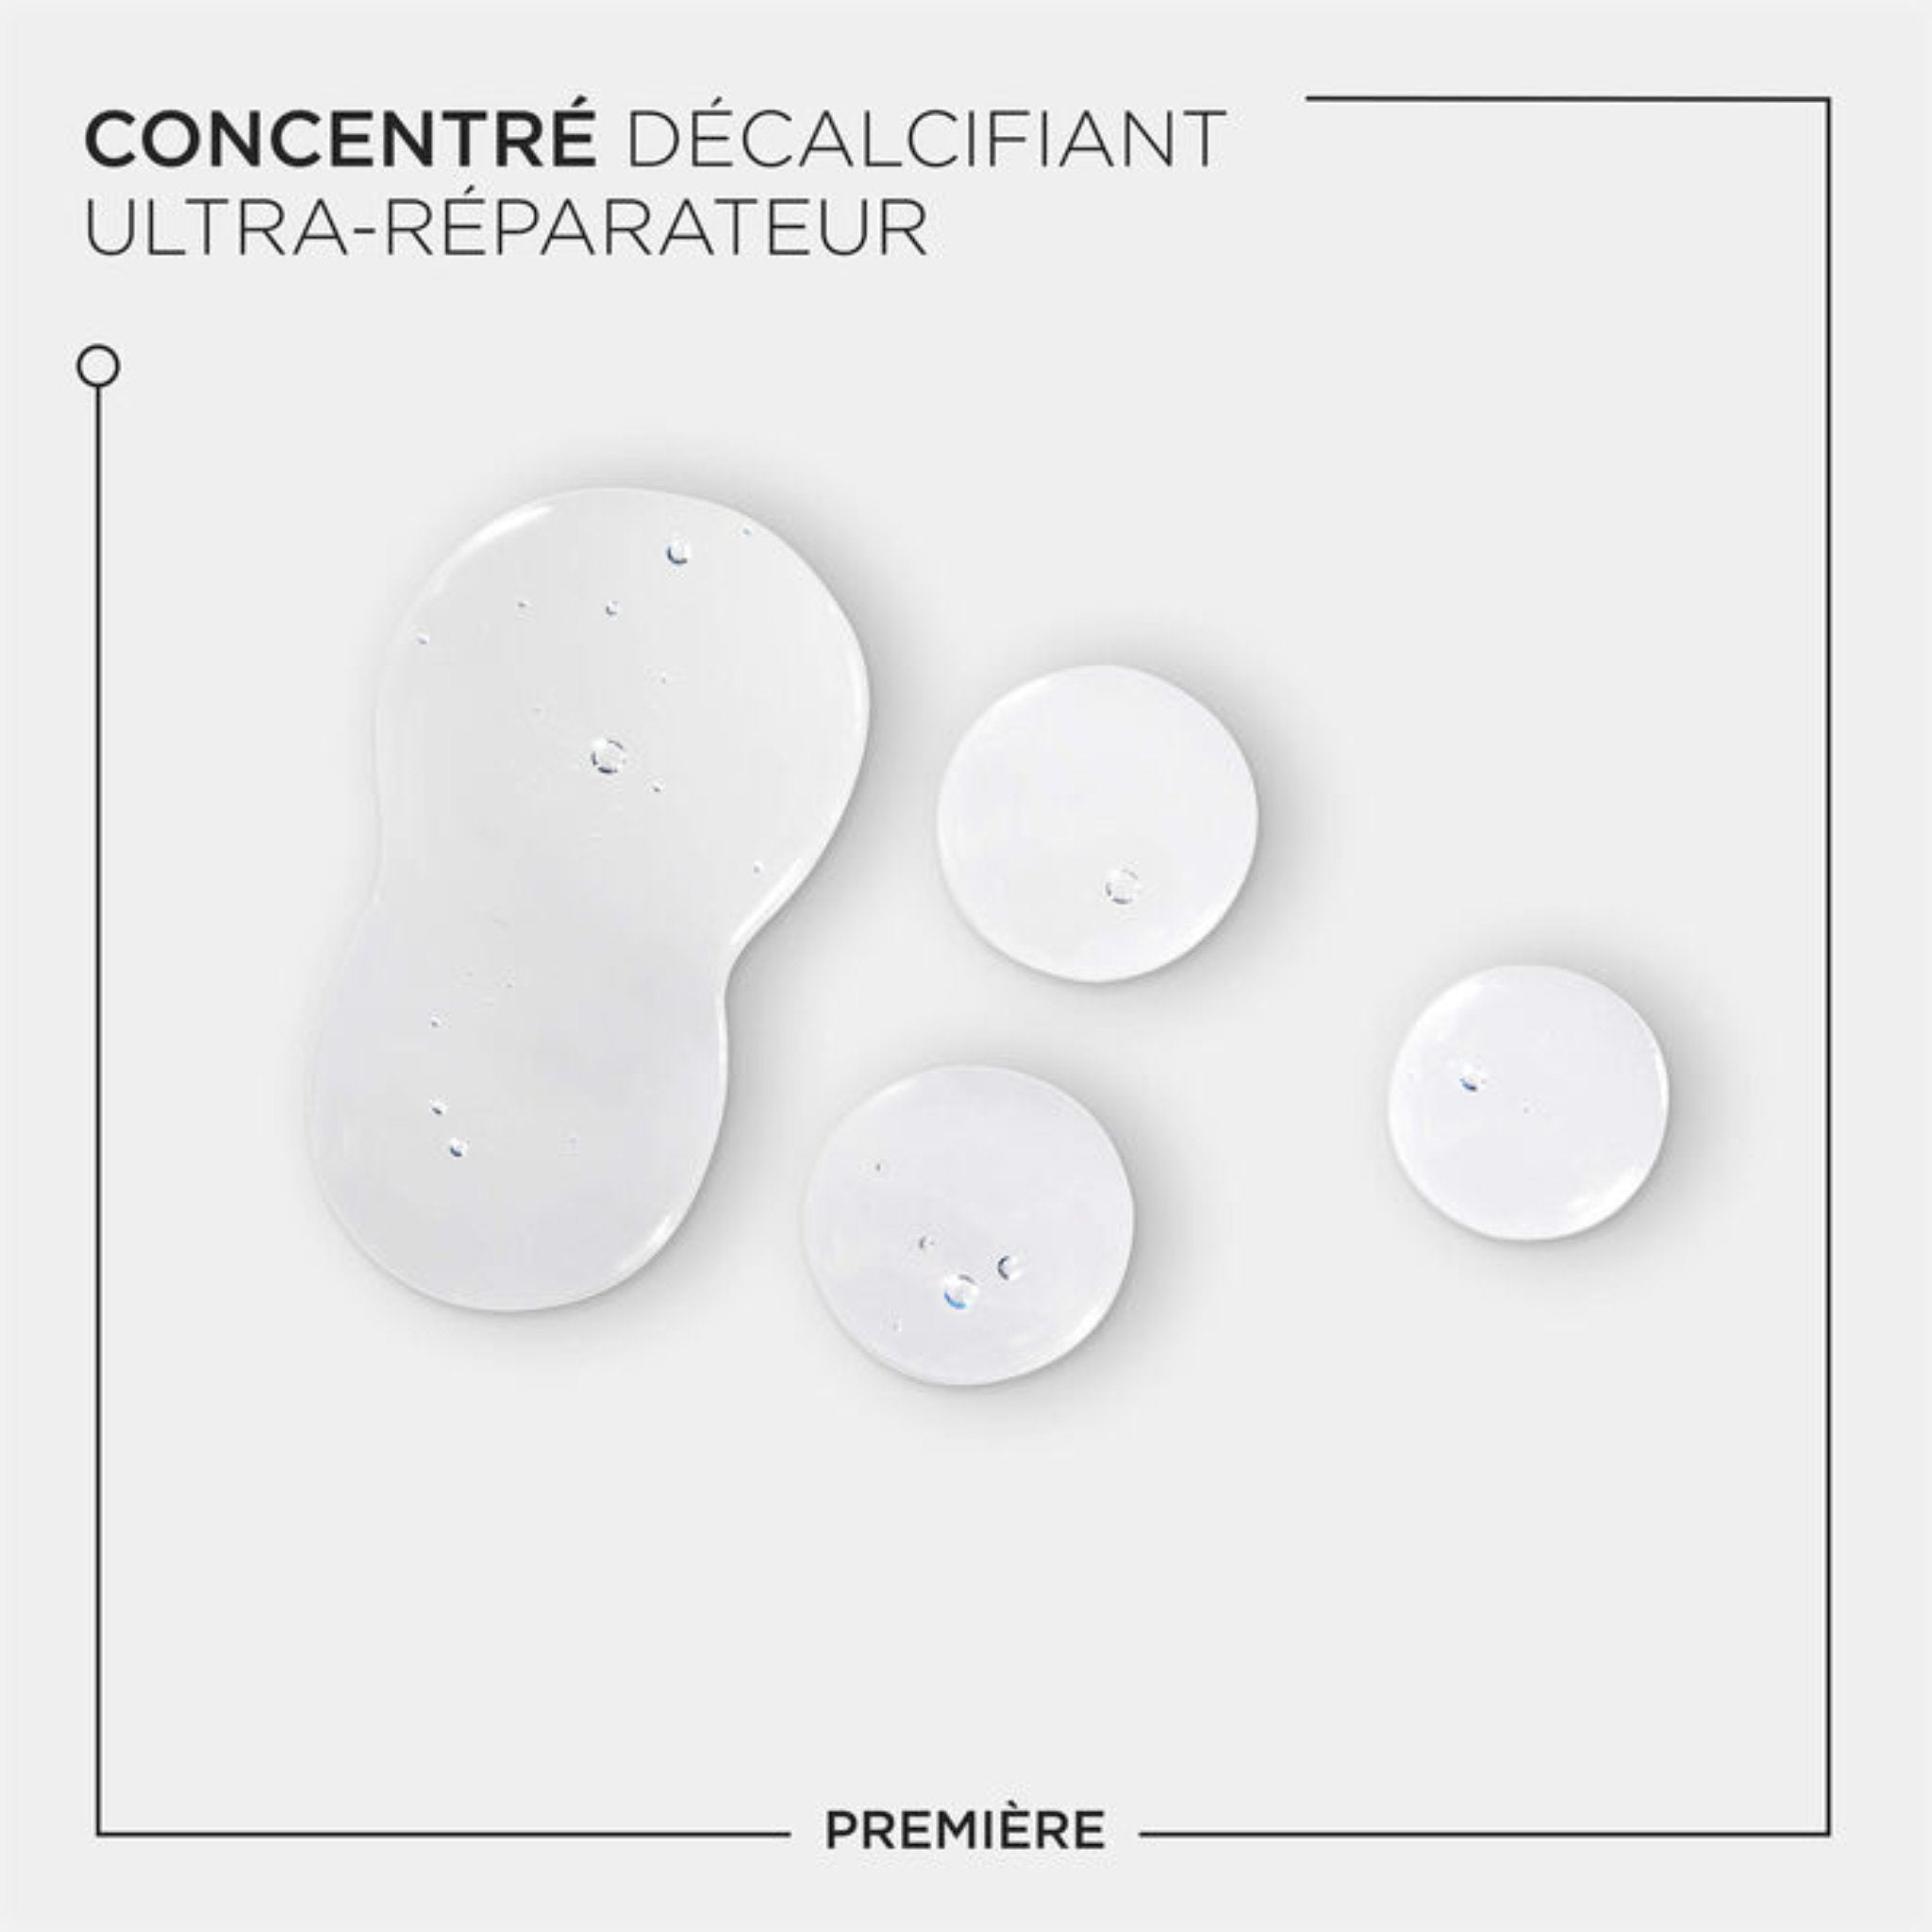 Kérastase. Première Concentré Décalcifiant Ultra-Réparateur - 250 ml (lancement 8 mars) - Concept C. Shop